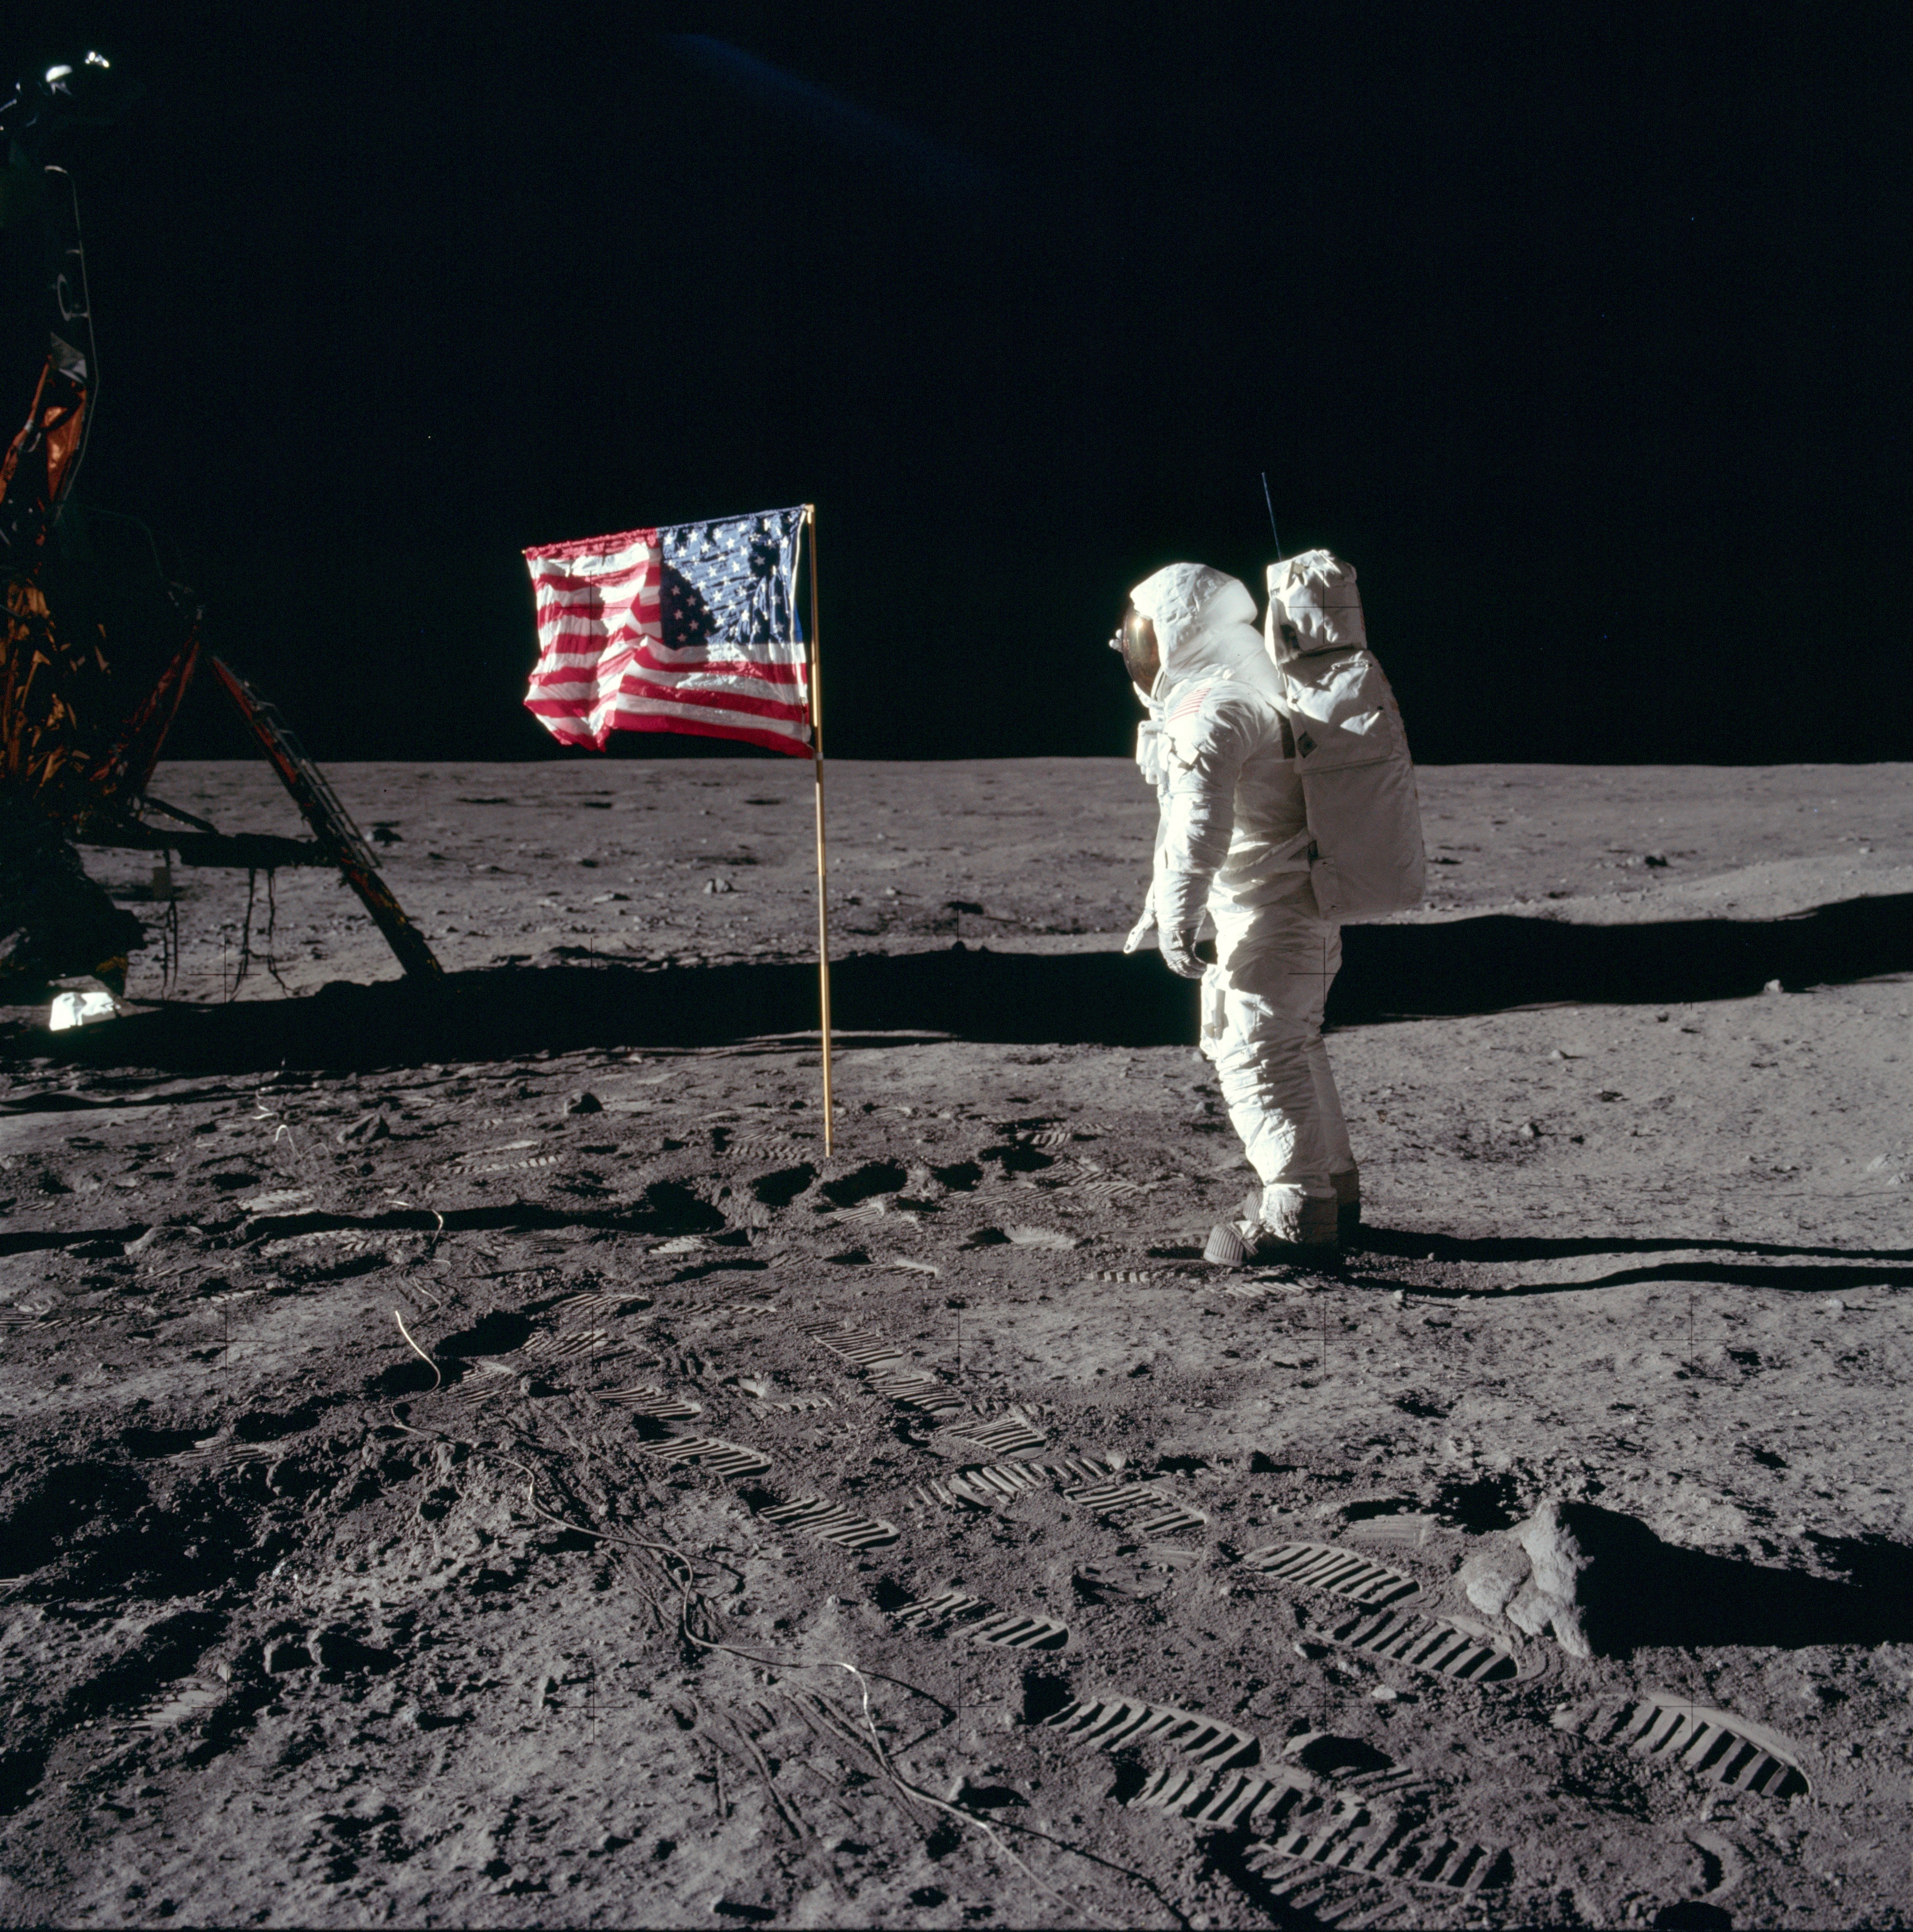 باز آلدرین با لباس فضایی روی سطح ماه در کنار پرچم ایالات متحده.